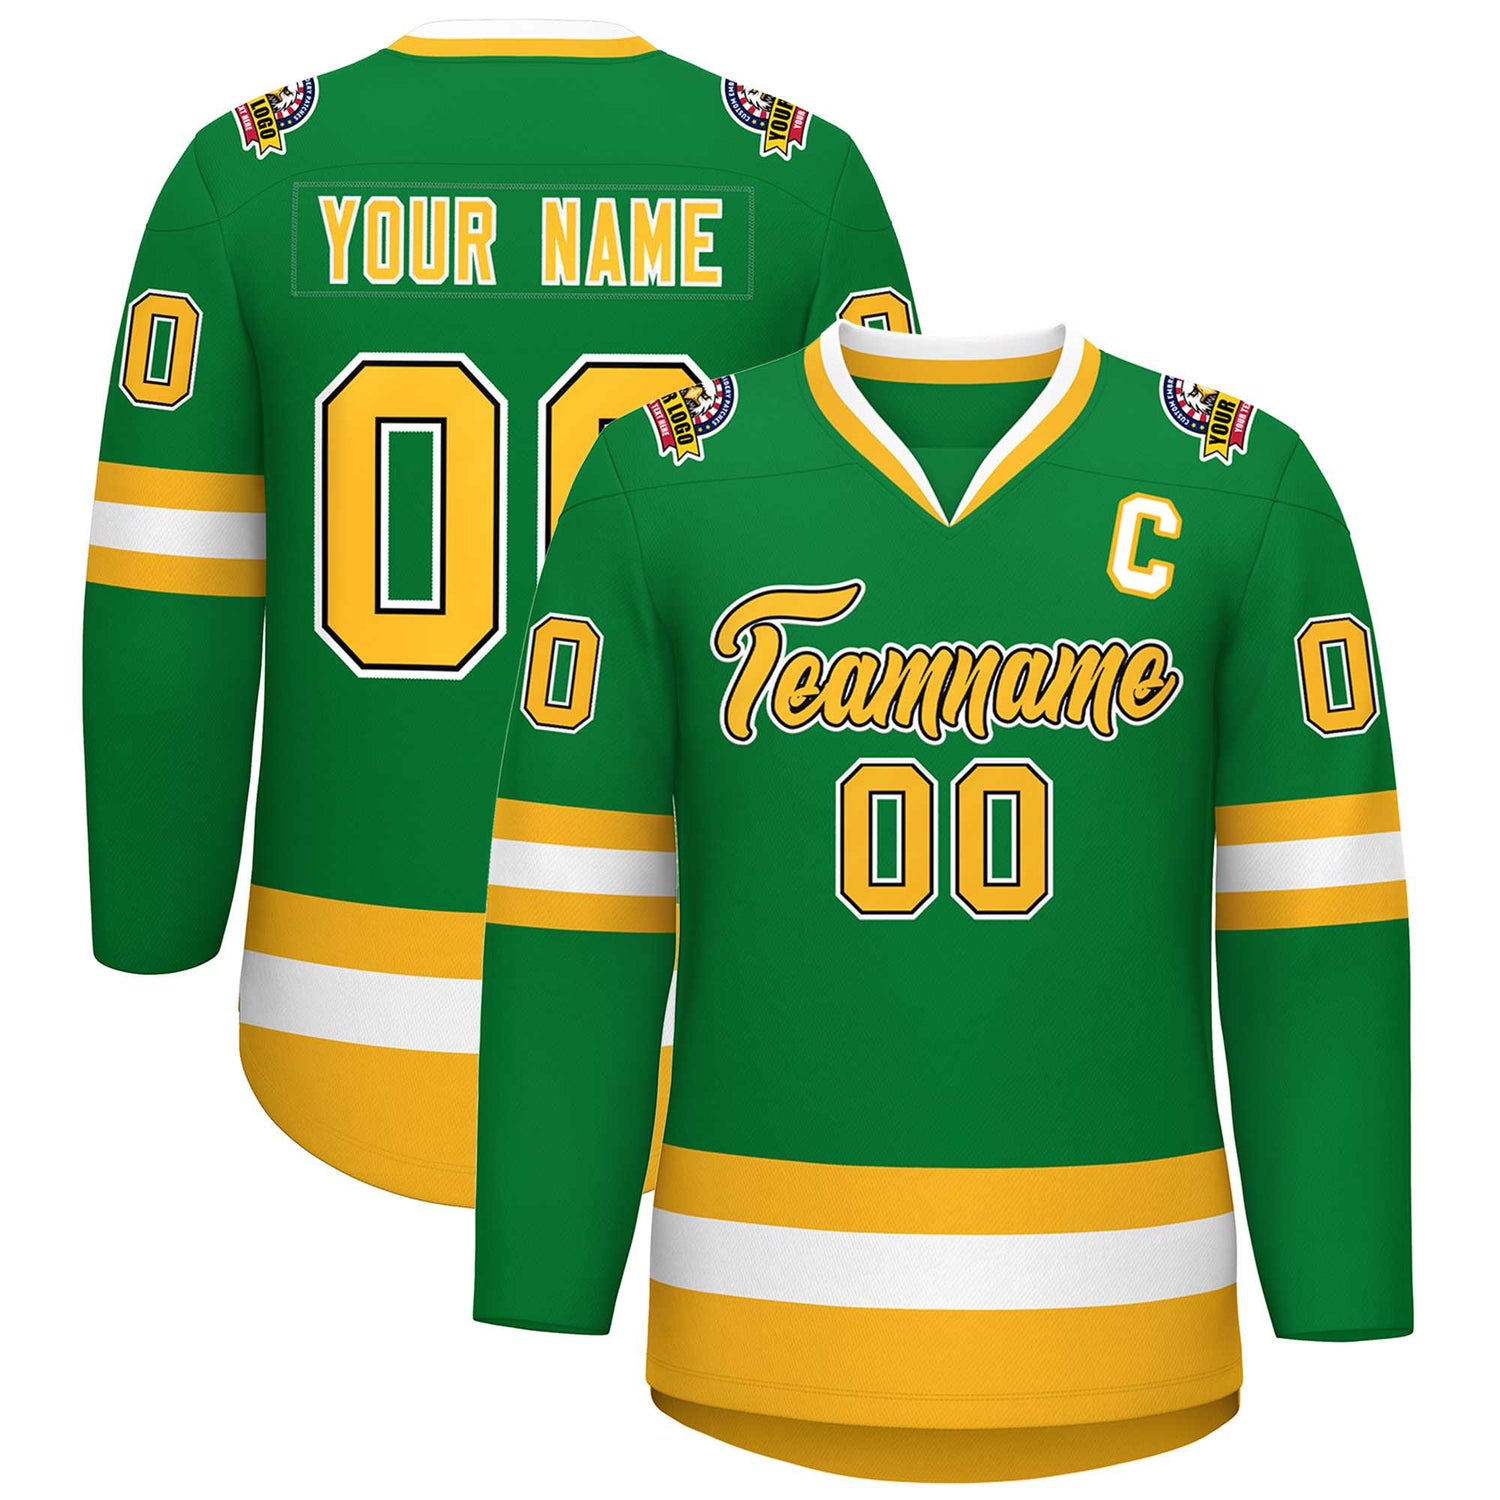 kxk custom kelly green hockey jersey